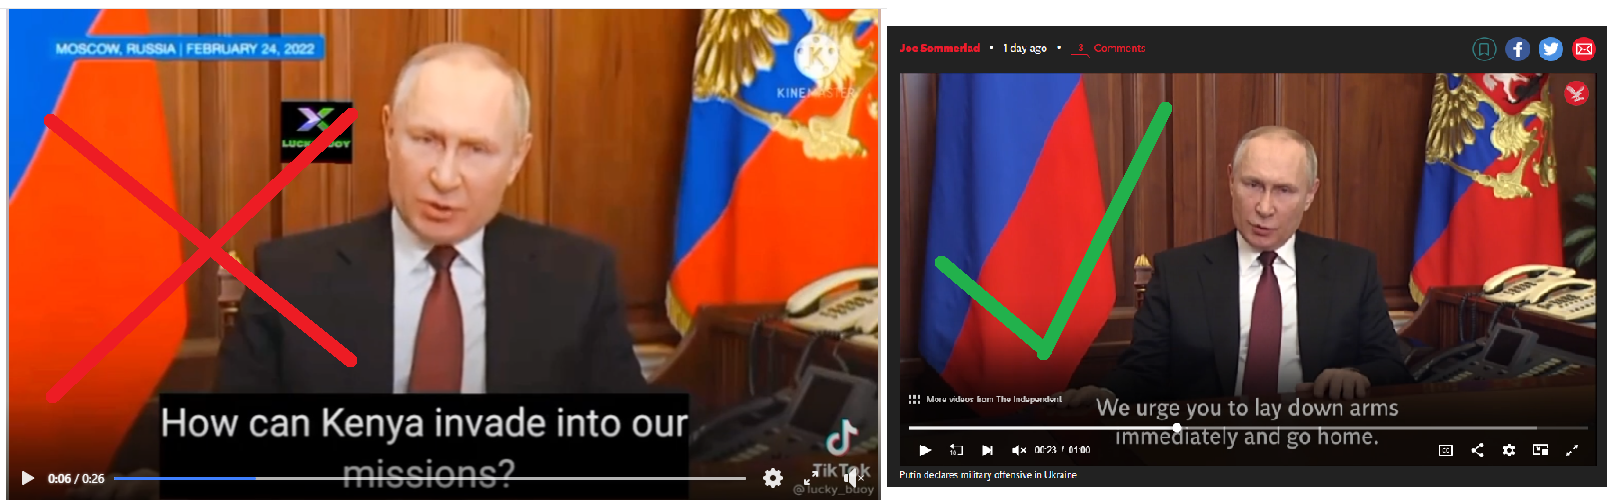 Vasemmalla kuva Putinin virheellisestä sanomasta Keniasta ja oikealla oikea versio.